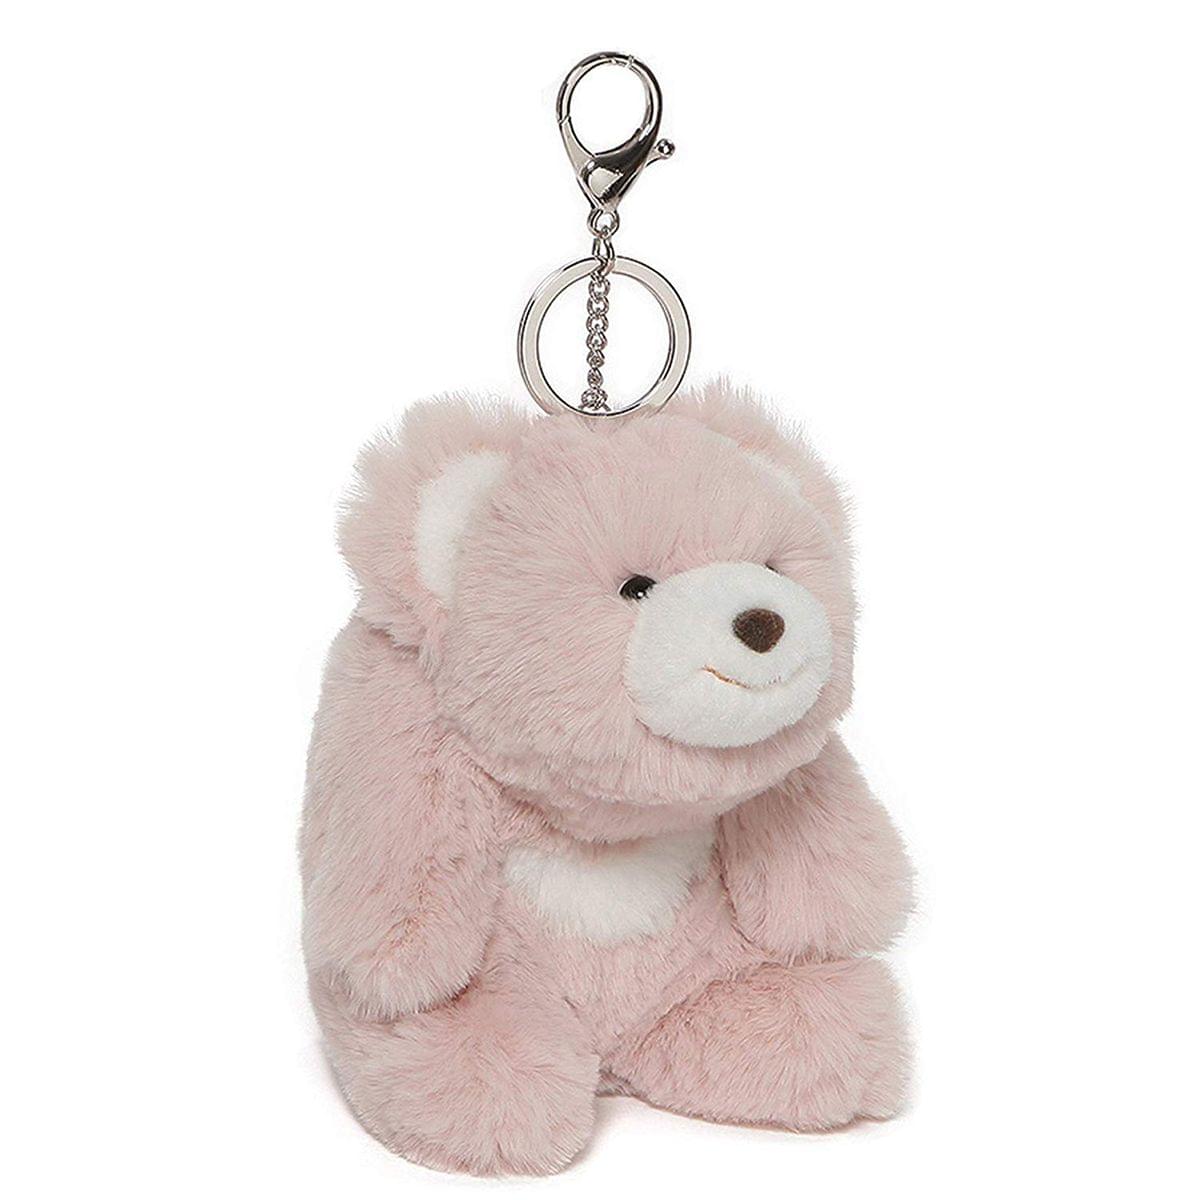 Snuffles the Teddy Bear 5-Inch Plush Keychain | Pink